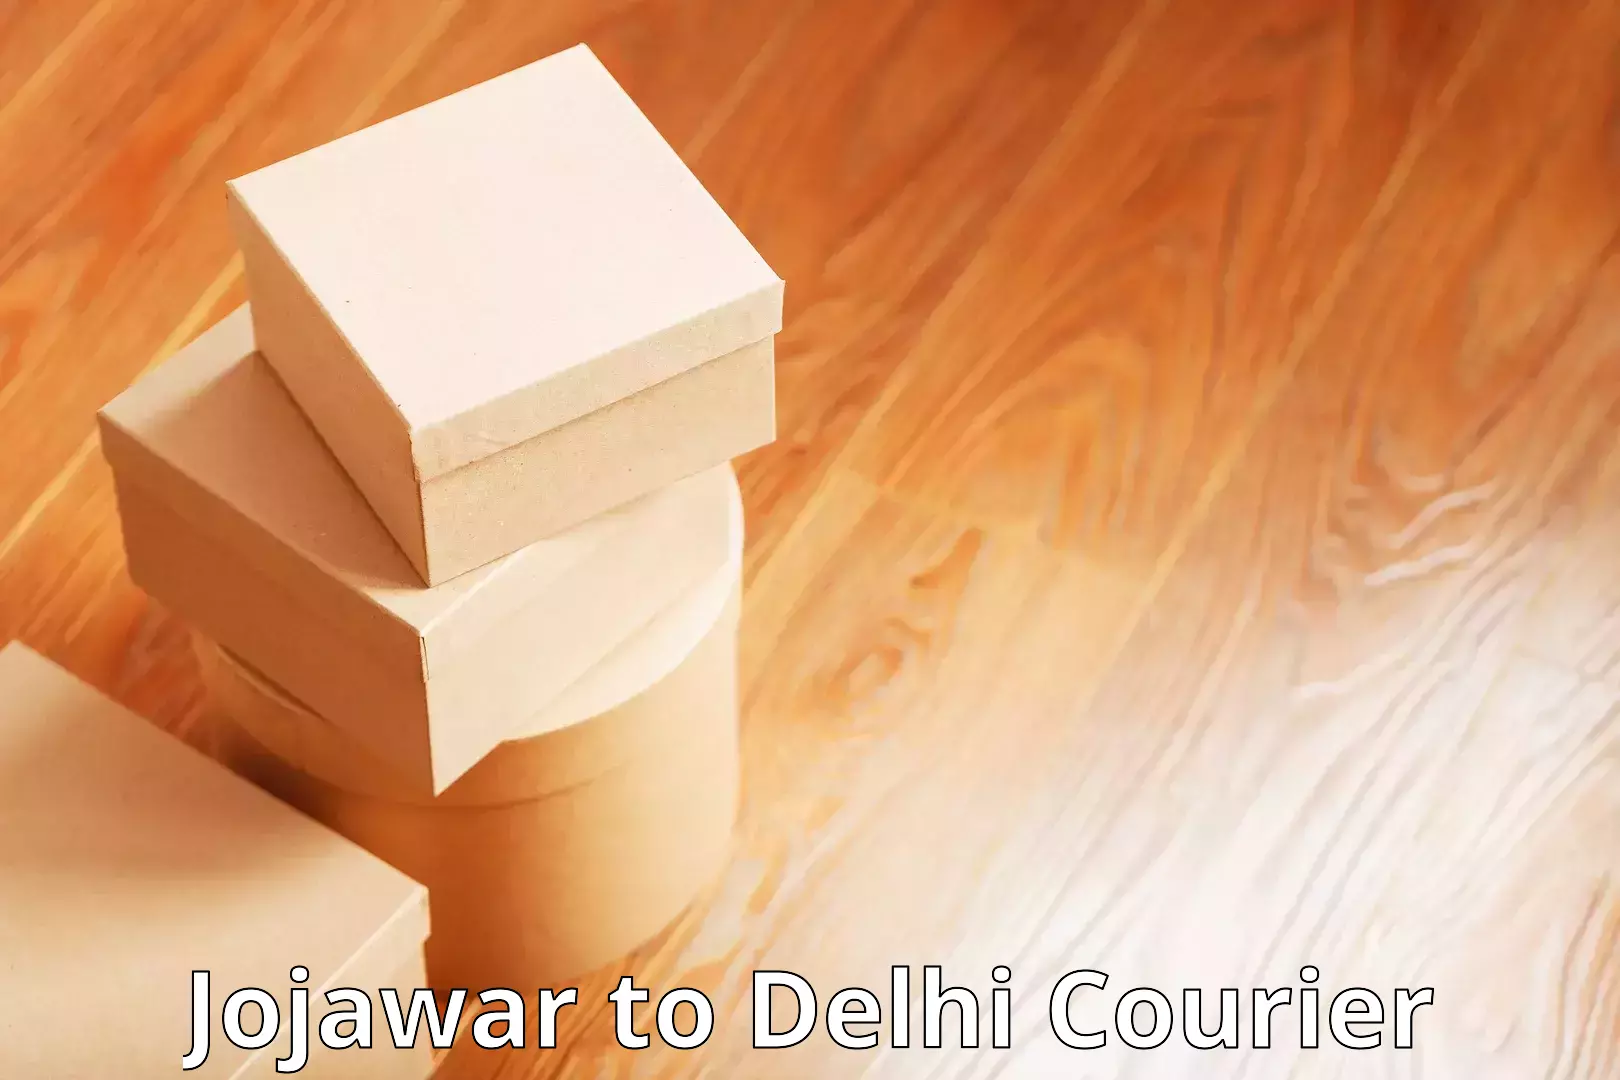 Courier dispatch services Jojawar to NIT Delhi